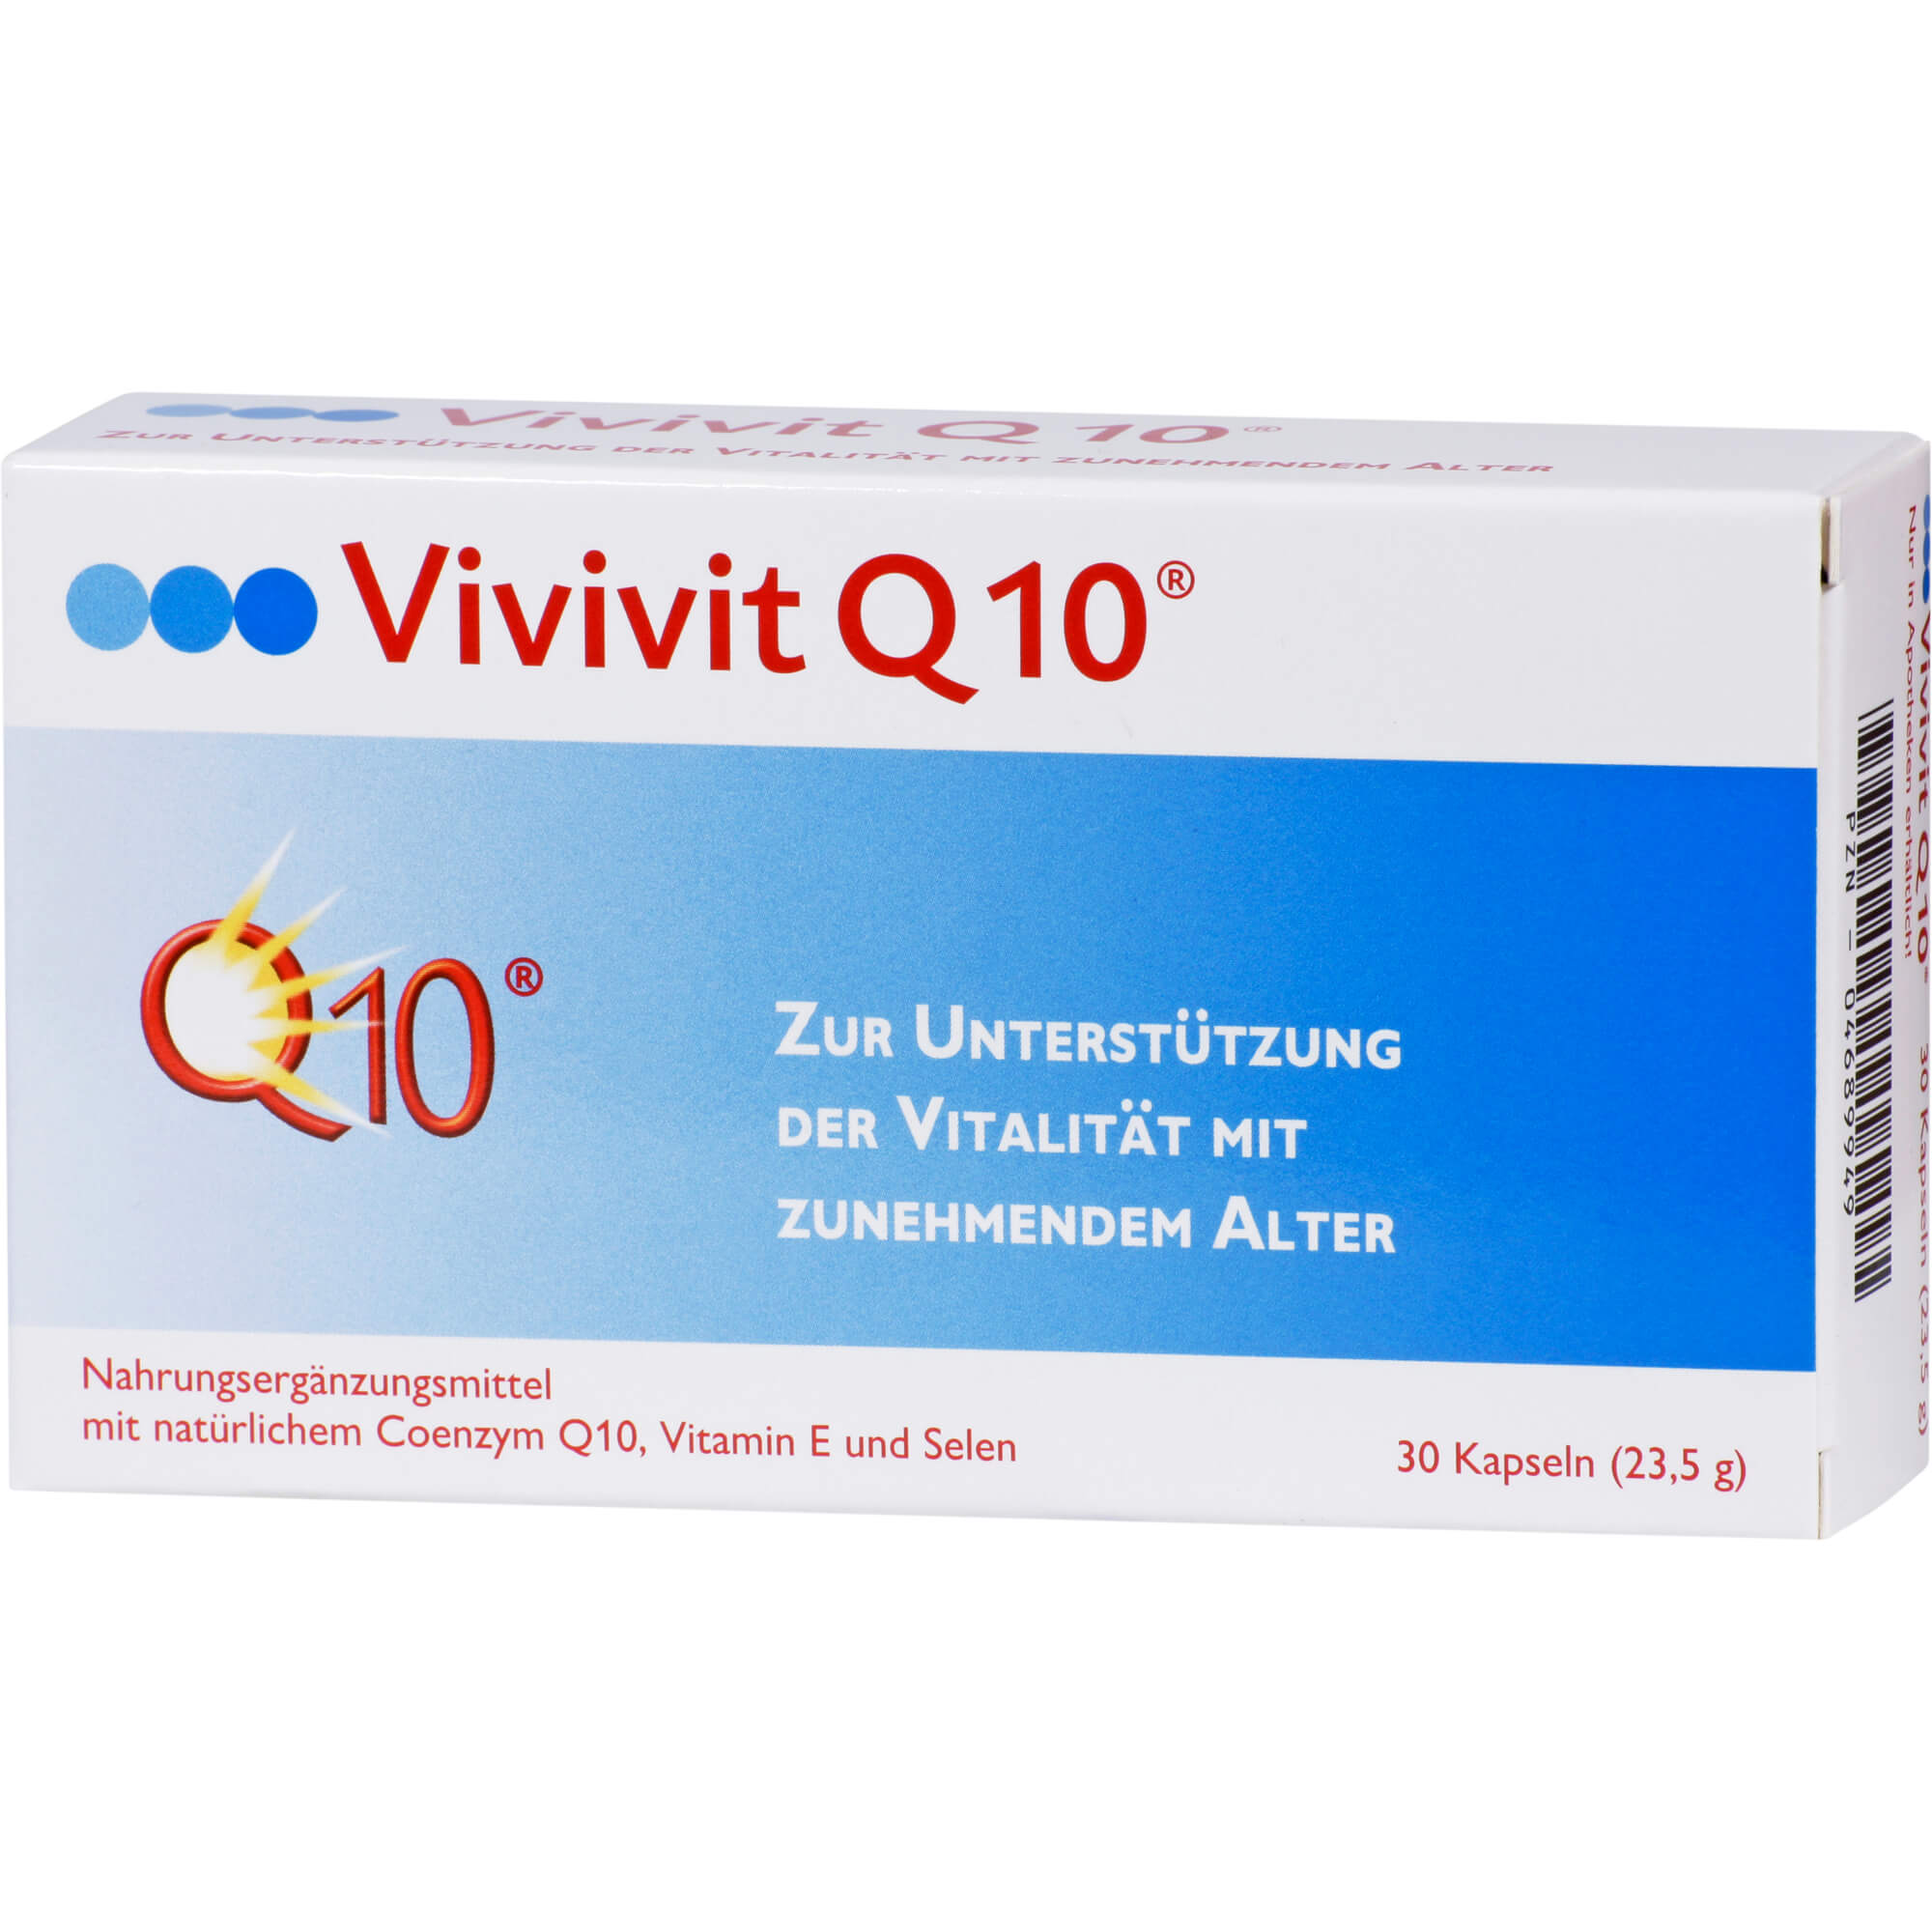 Mit Coenzym Q10, Vitamin E und Selen bringt Vivivit Q10 Energie und Leistungskraft.